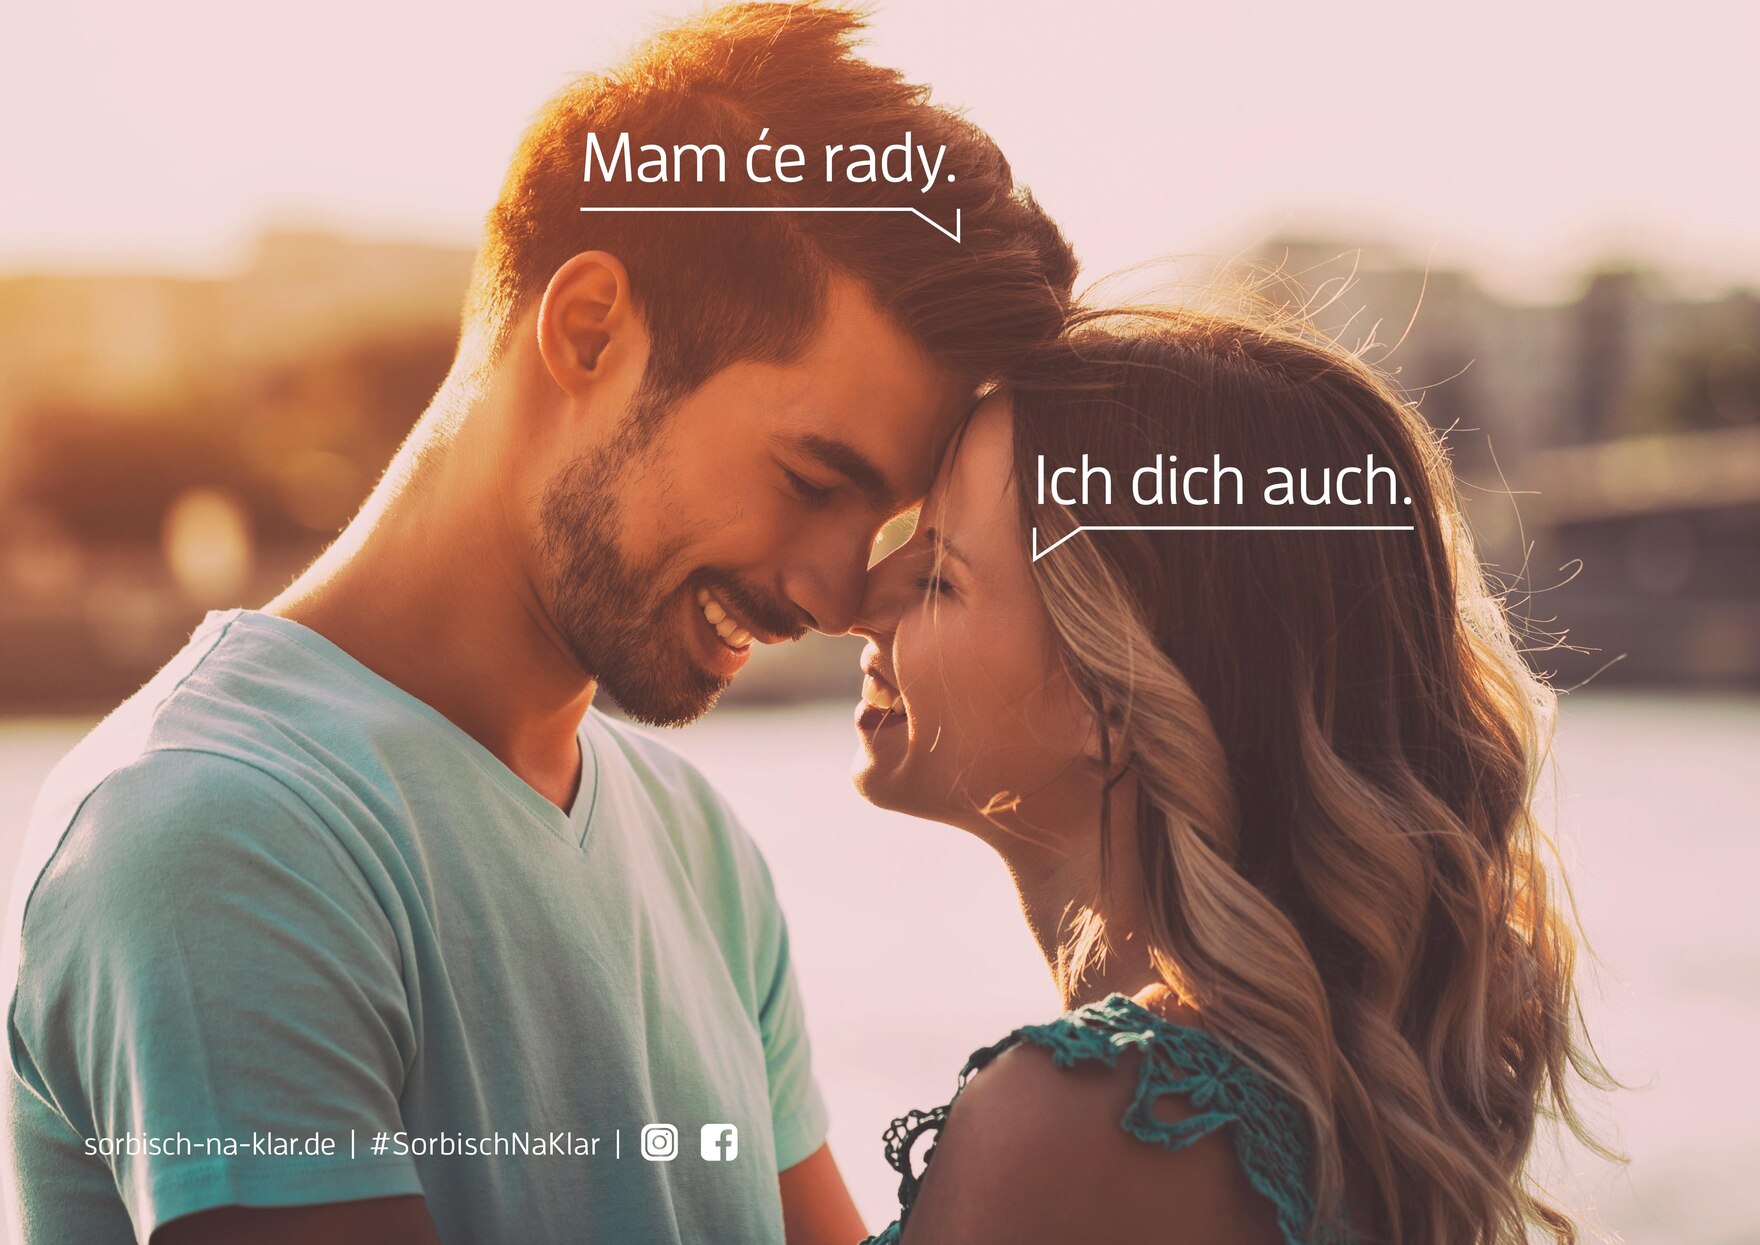 Motiv der Imagekampagne Sorbisch? Na Klar.: Eine Mann sagt auf Sorbisch zu seiner Frau: »Mam će rady.« Die Frau antwortet auf Deutsch: »Ich dich auch.«